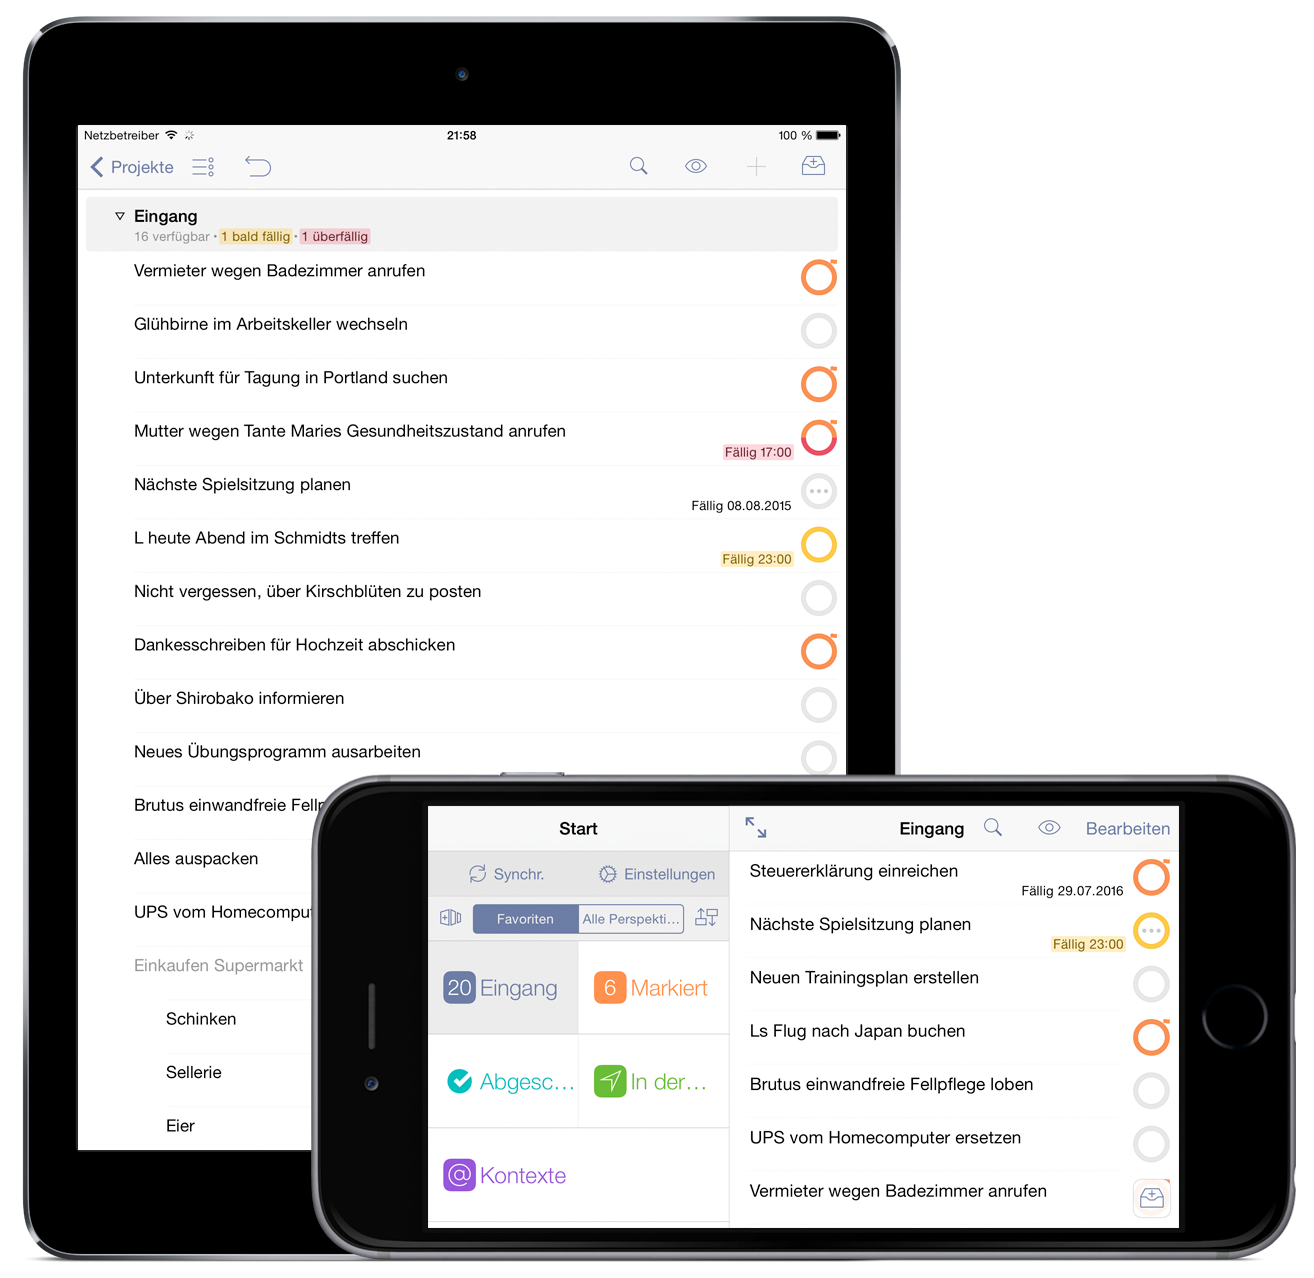 OmniFocus 2 Pro für iOS im Querformat auf dem iPhone 6 Plus und im Hochformat auf dem iPad Air 2